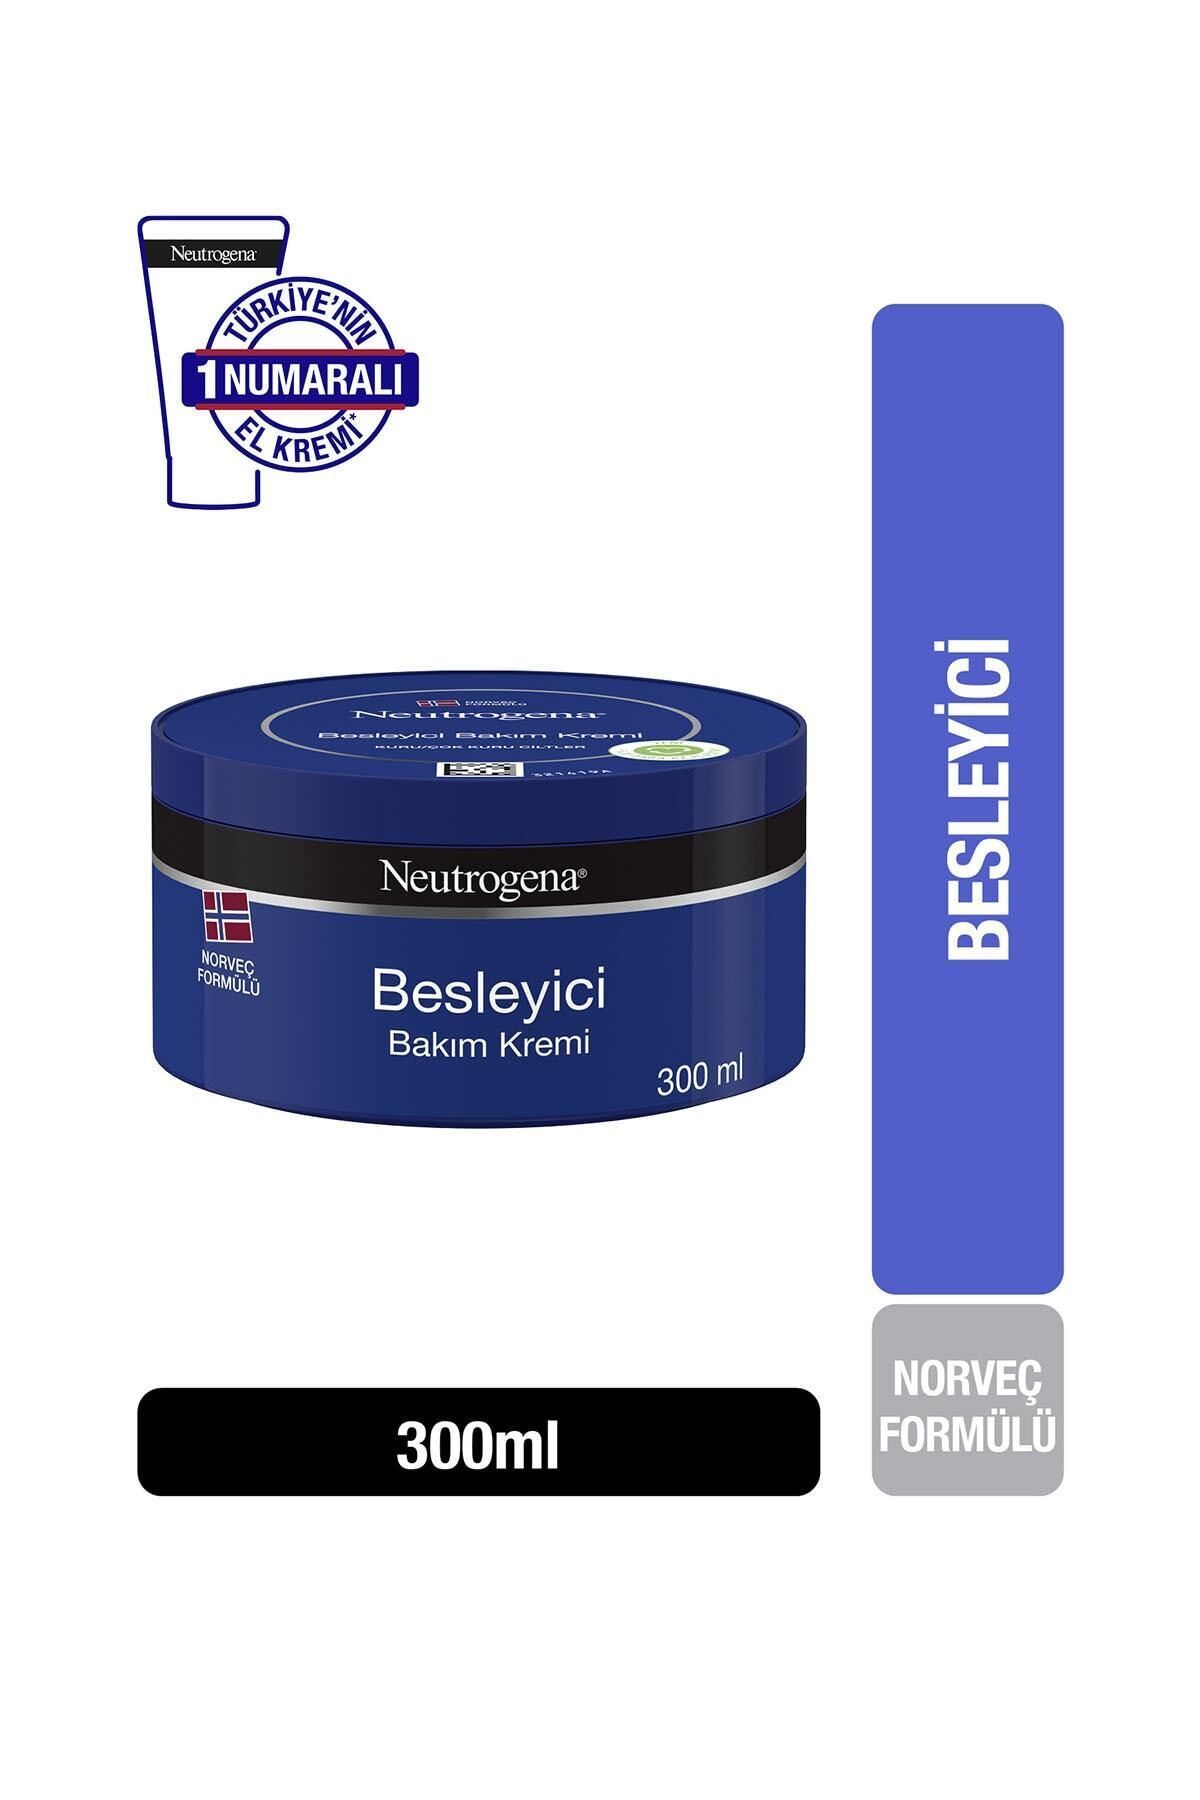 Neutrogena Norveç Formülü Besleyici Bakim Kremi 300 ml